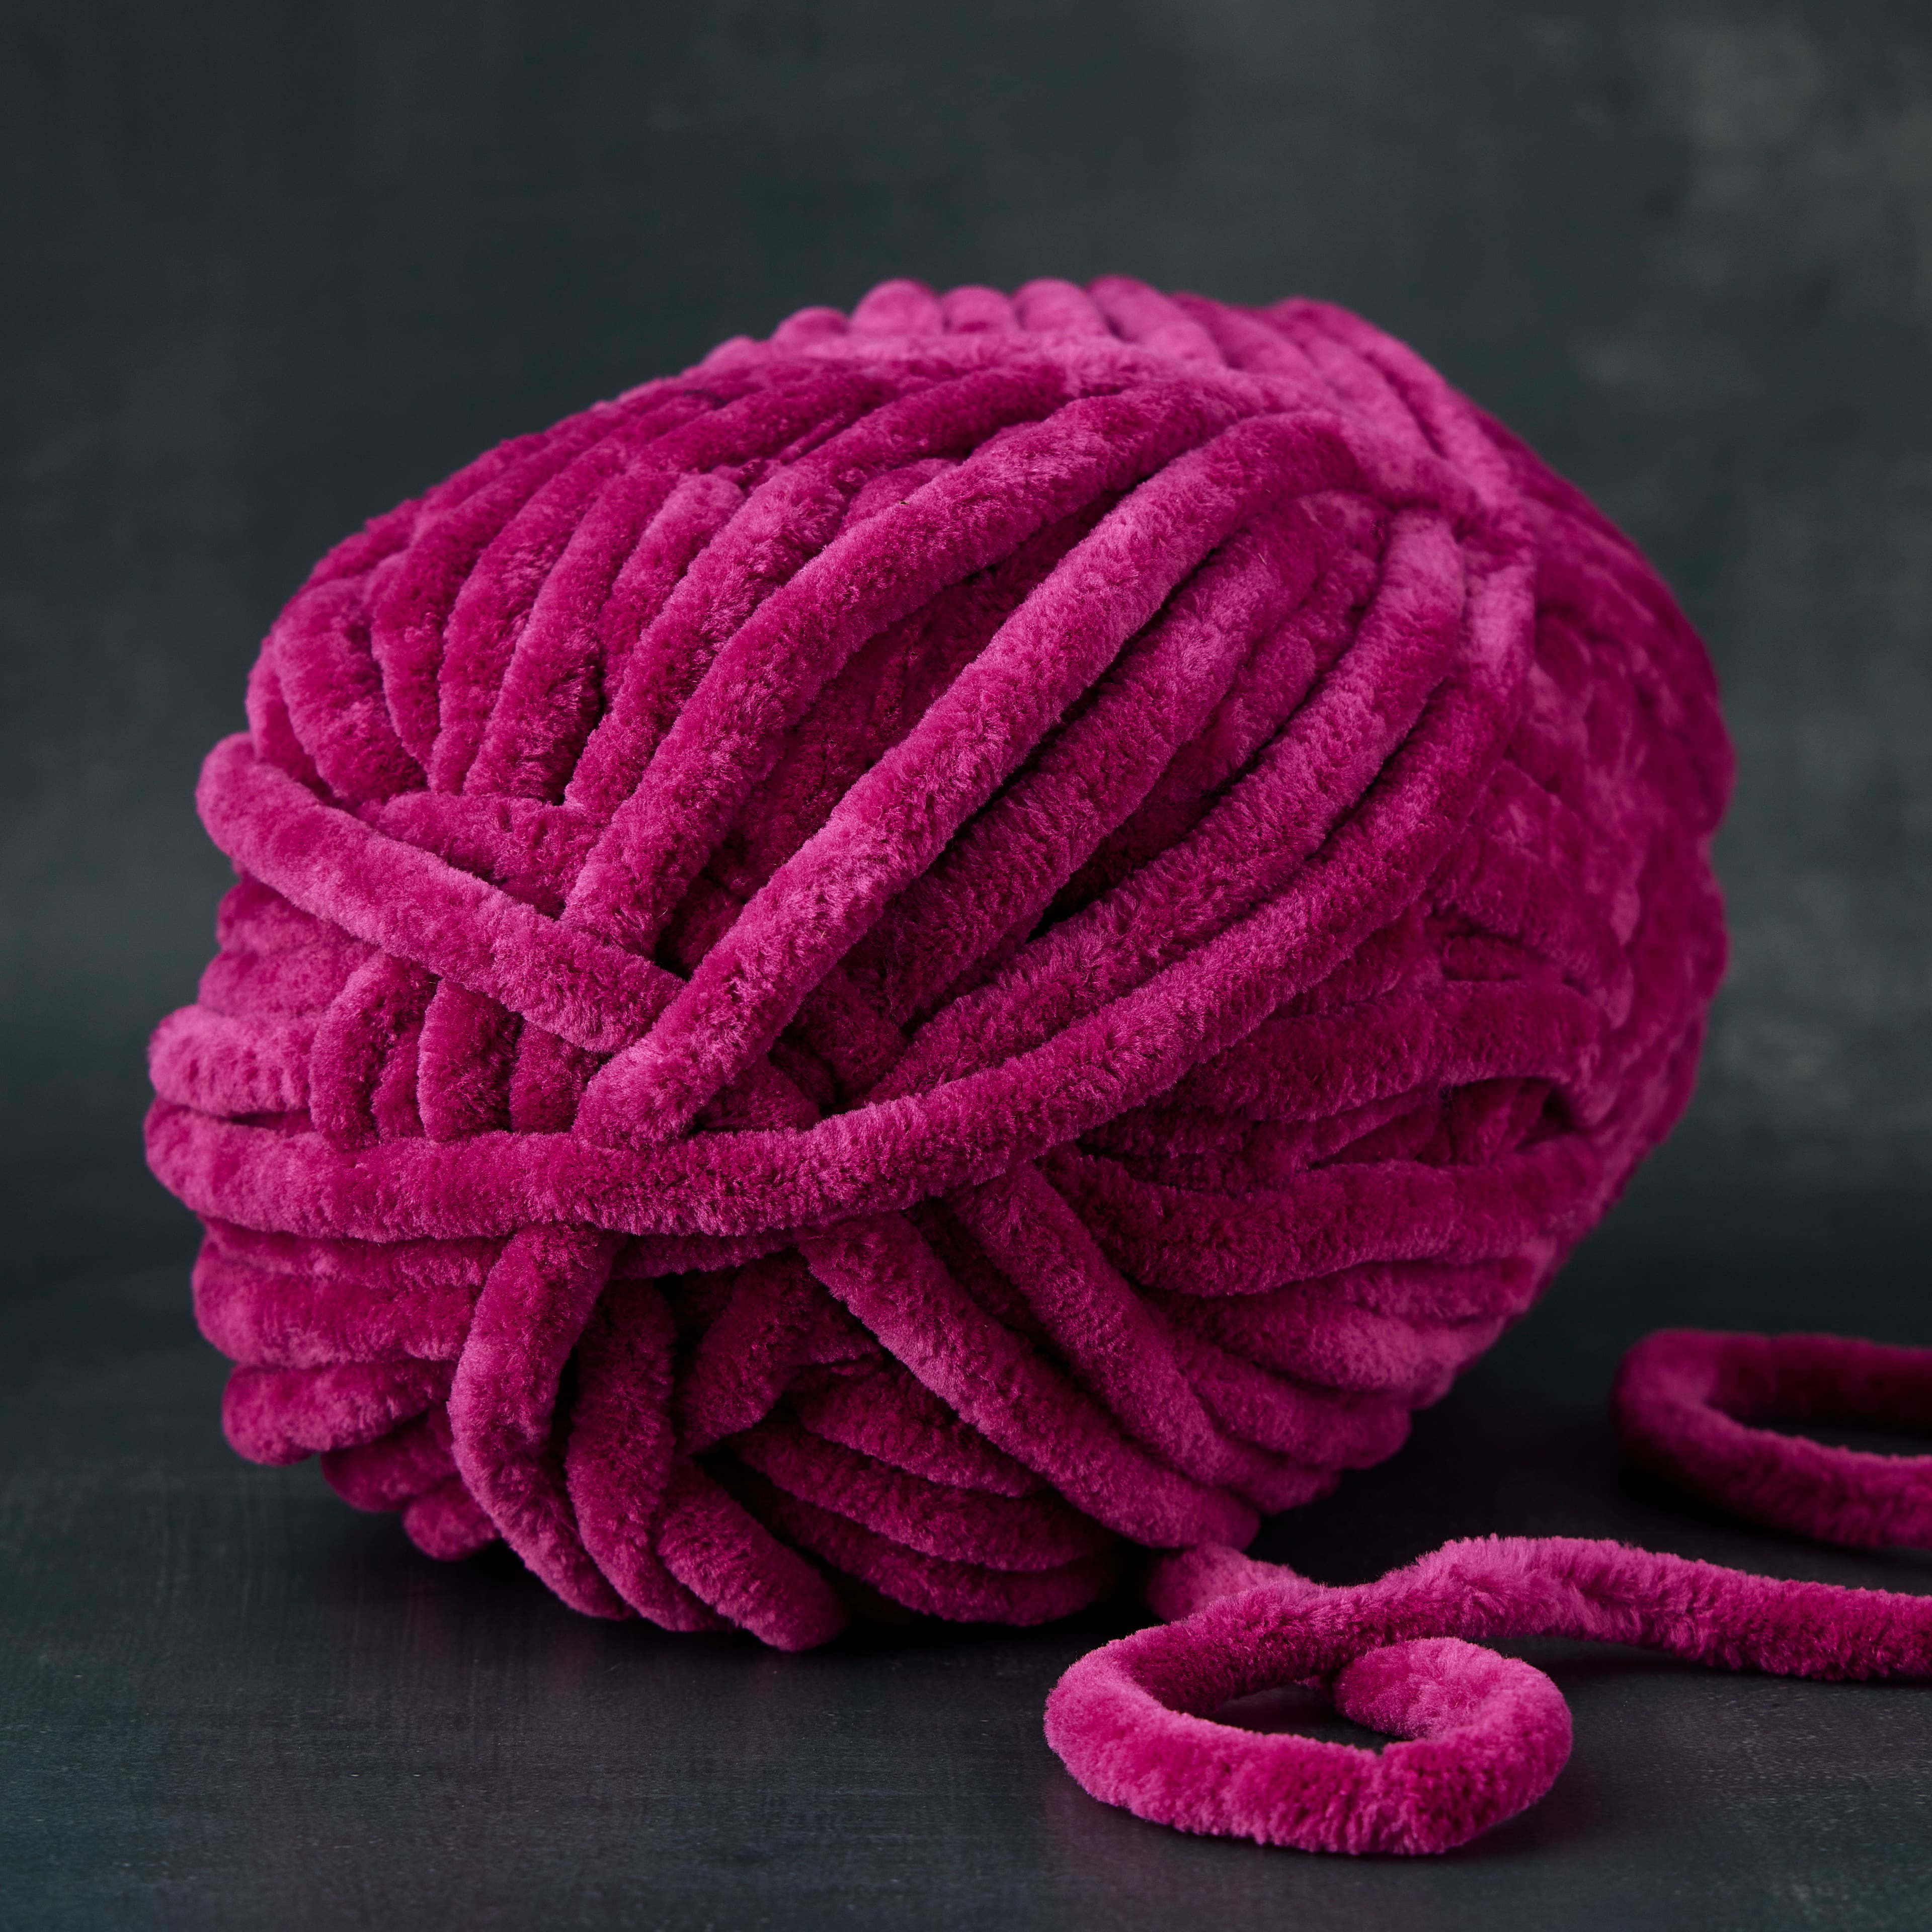 Loops & Threads Sweet Snuggles Lite Dot Pattern Yarn - Perf Pink - 9 oz